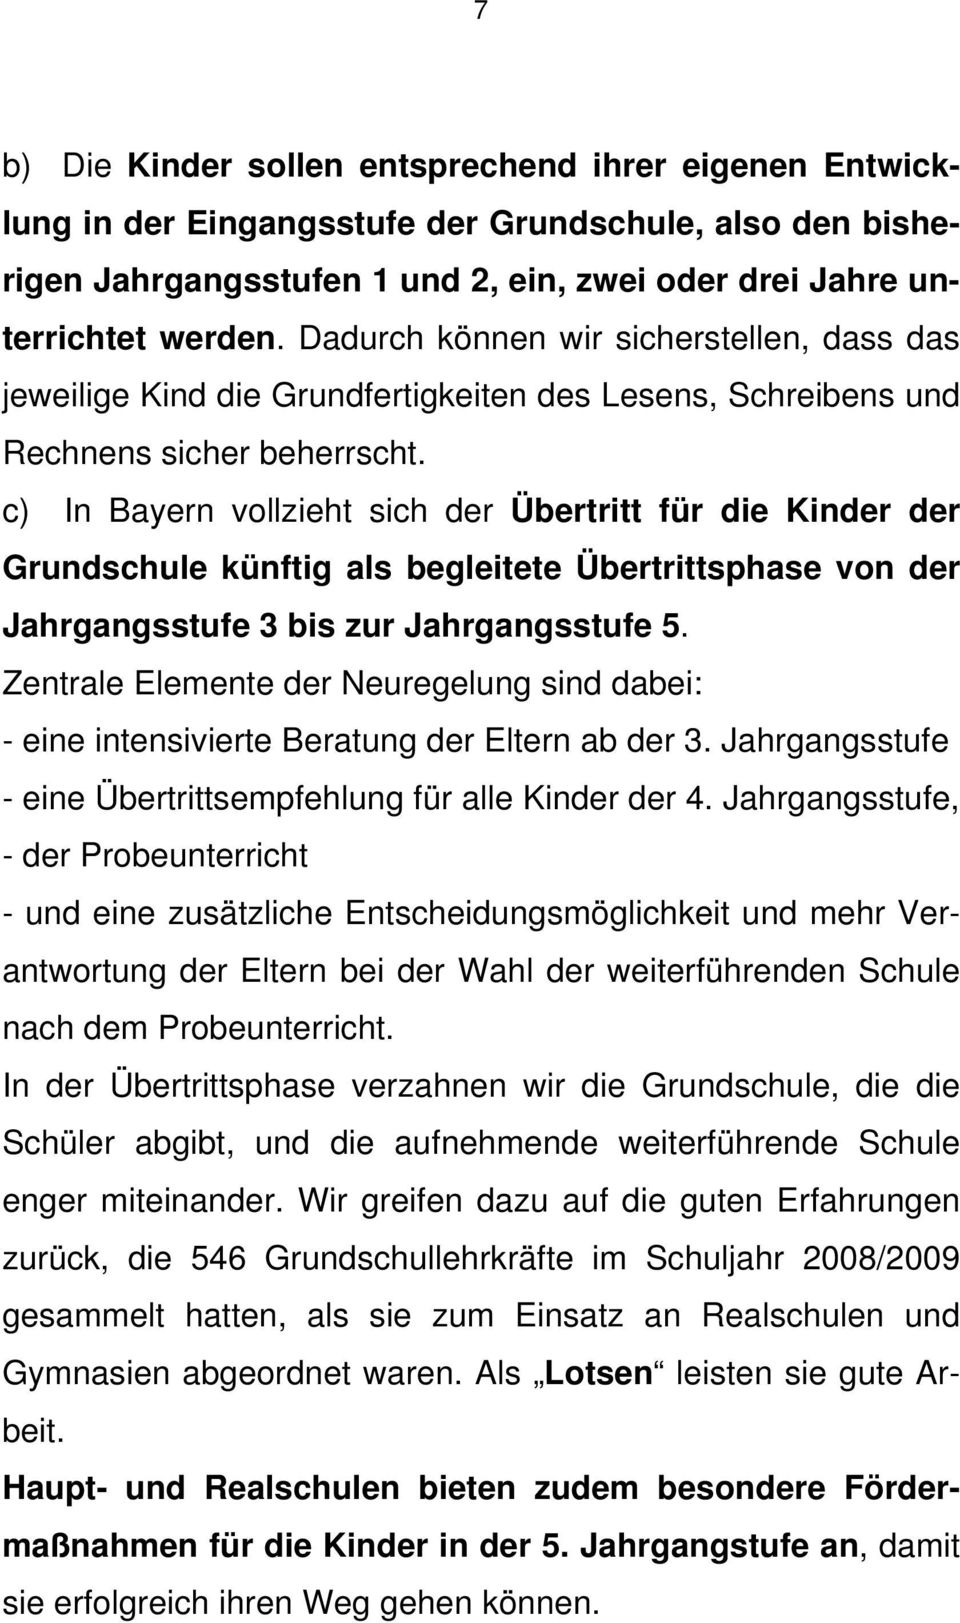 c) In Bayern vollzieht sich der Übertritt für die Kinder der Grundschule künftig als begleitete Übertrittsphase von der Jahrgangsstufe 3 bis zur Jahrgangsstufe 5.